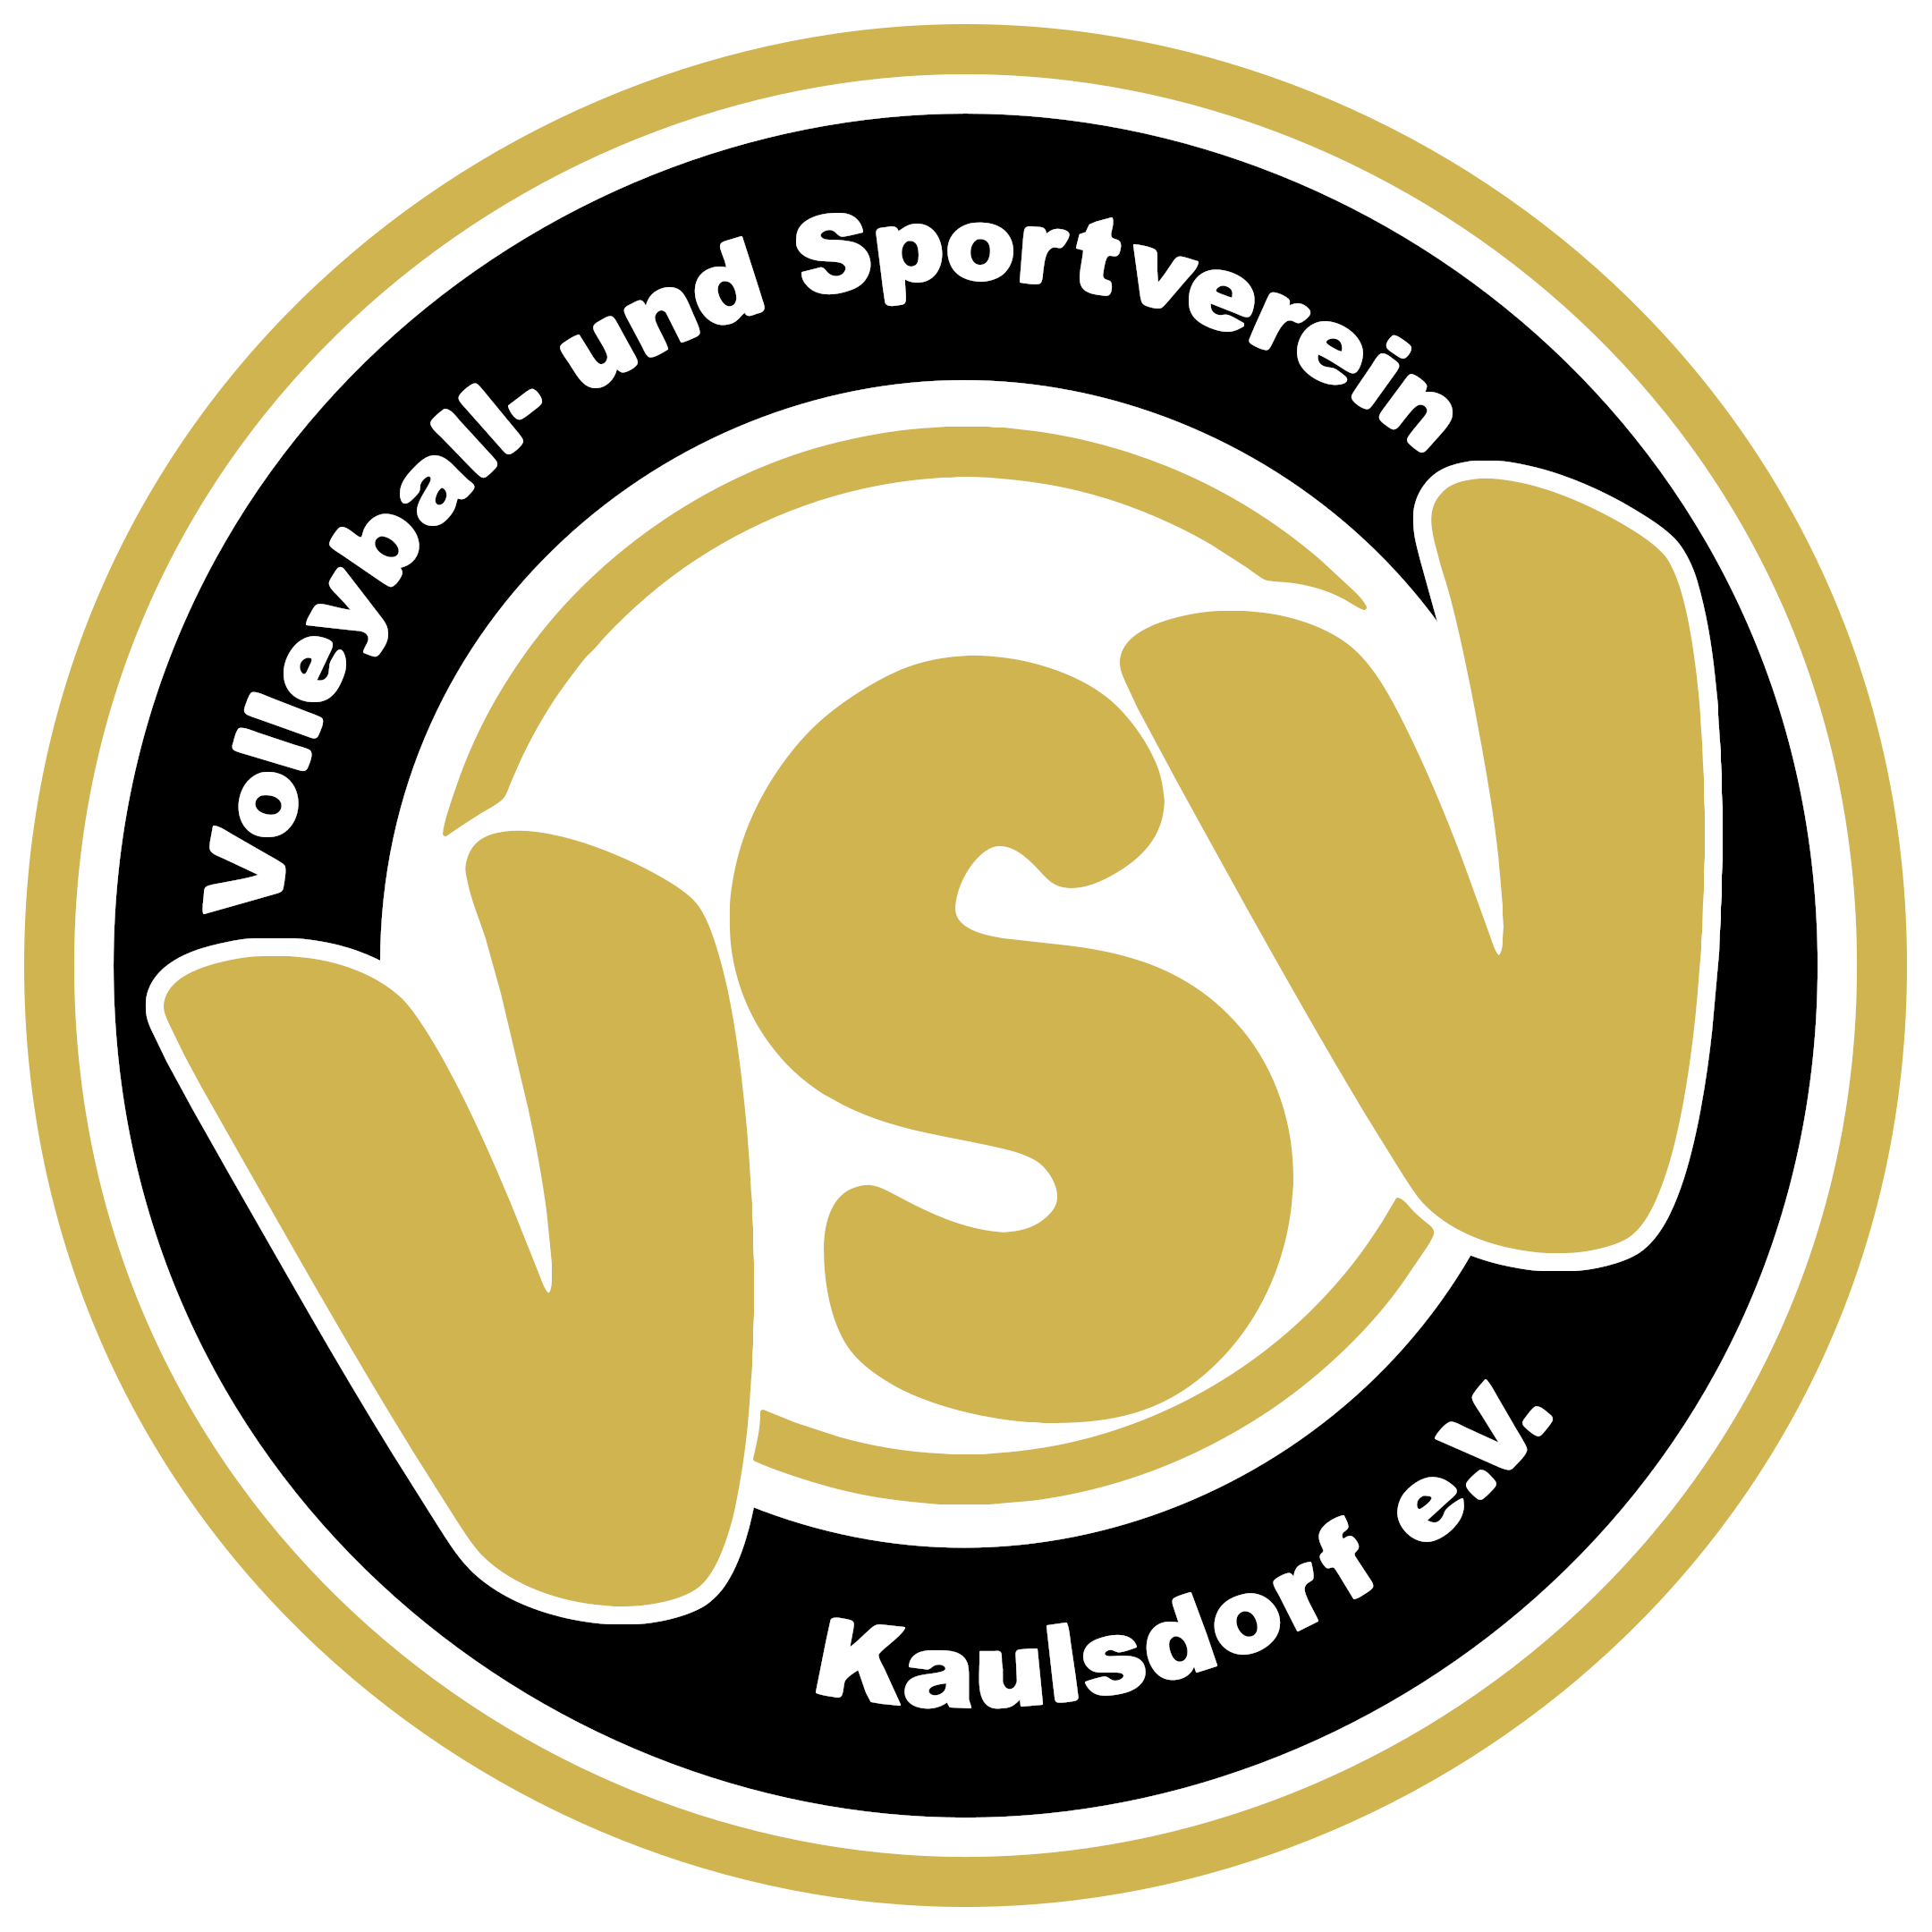 VSV Kaulsdorf